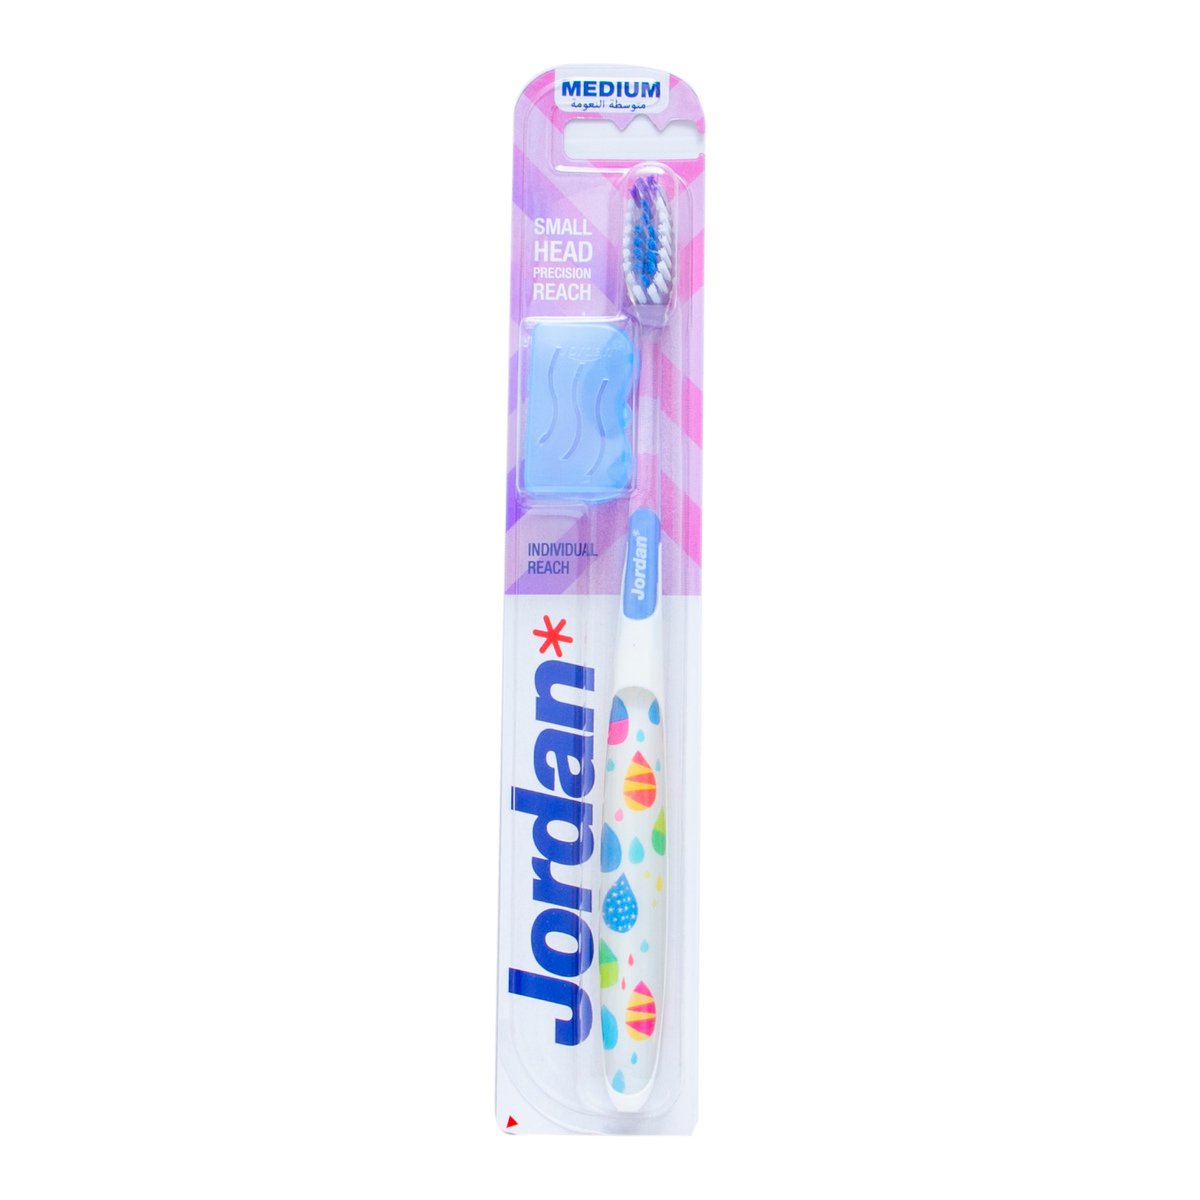 Jordan Individual Reach Small Head Toothbrush Medium 1 pc